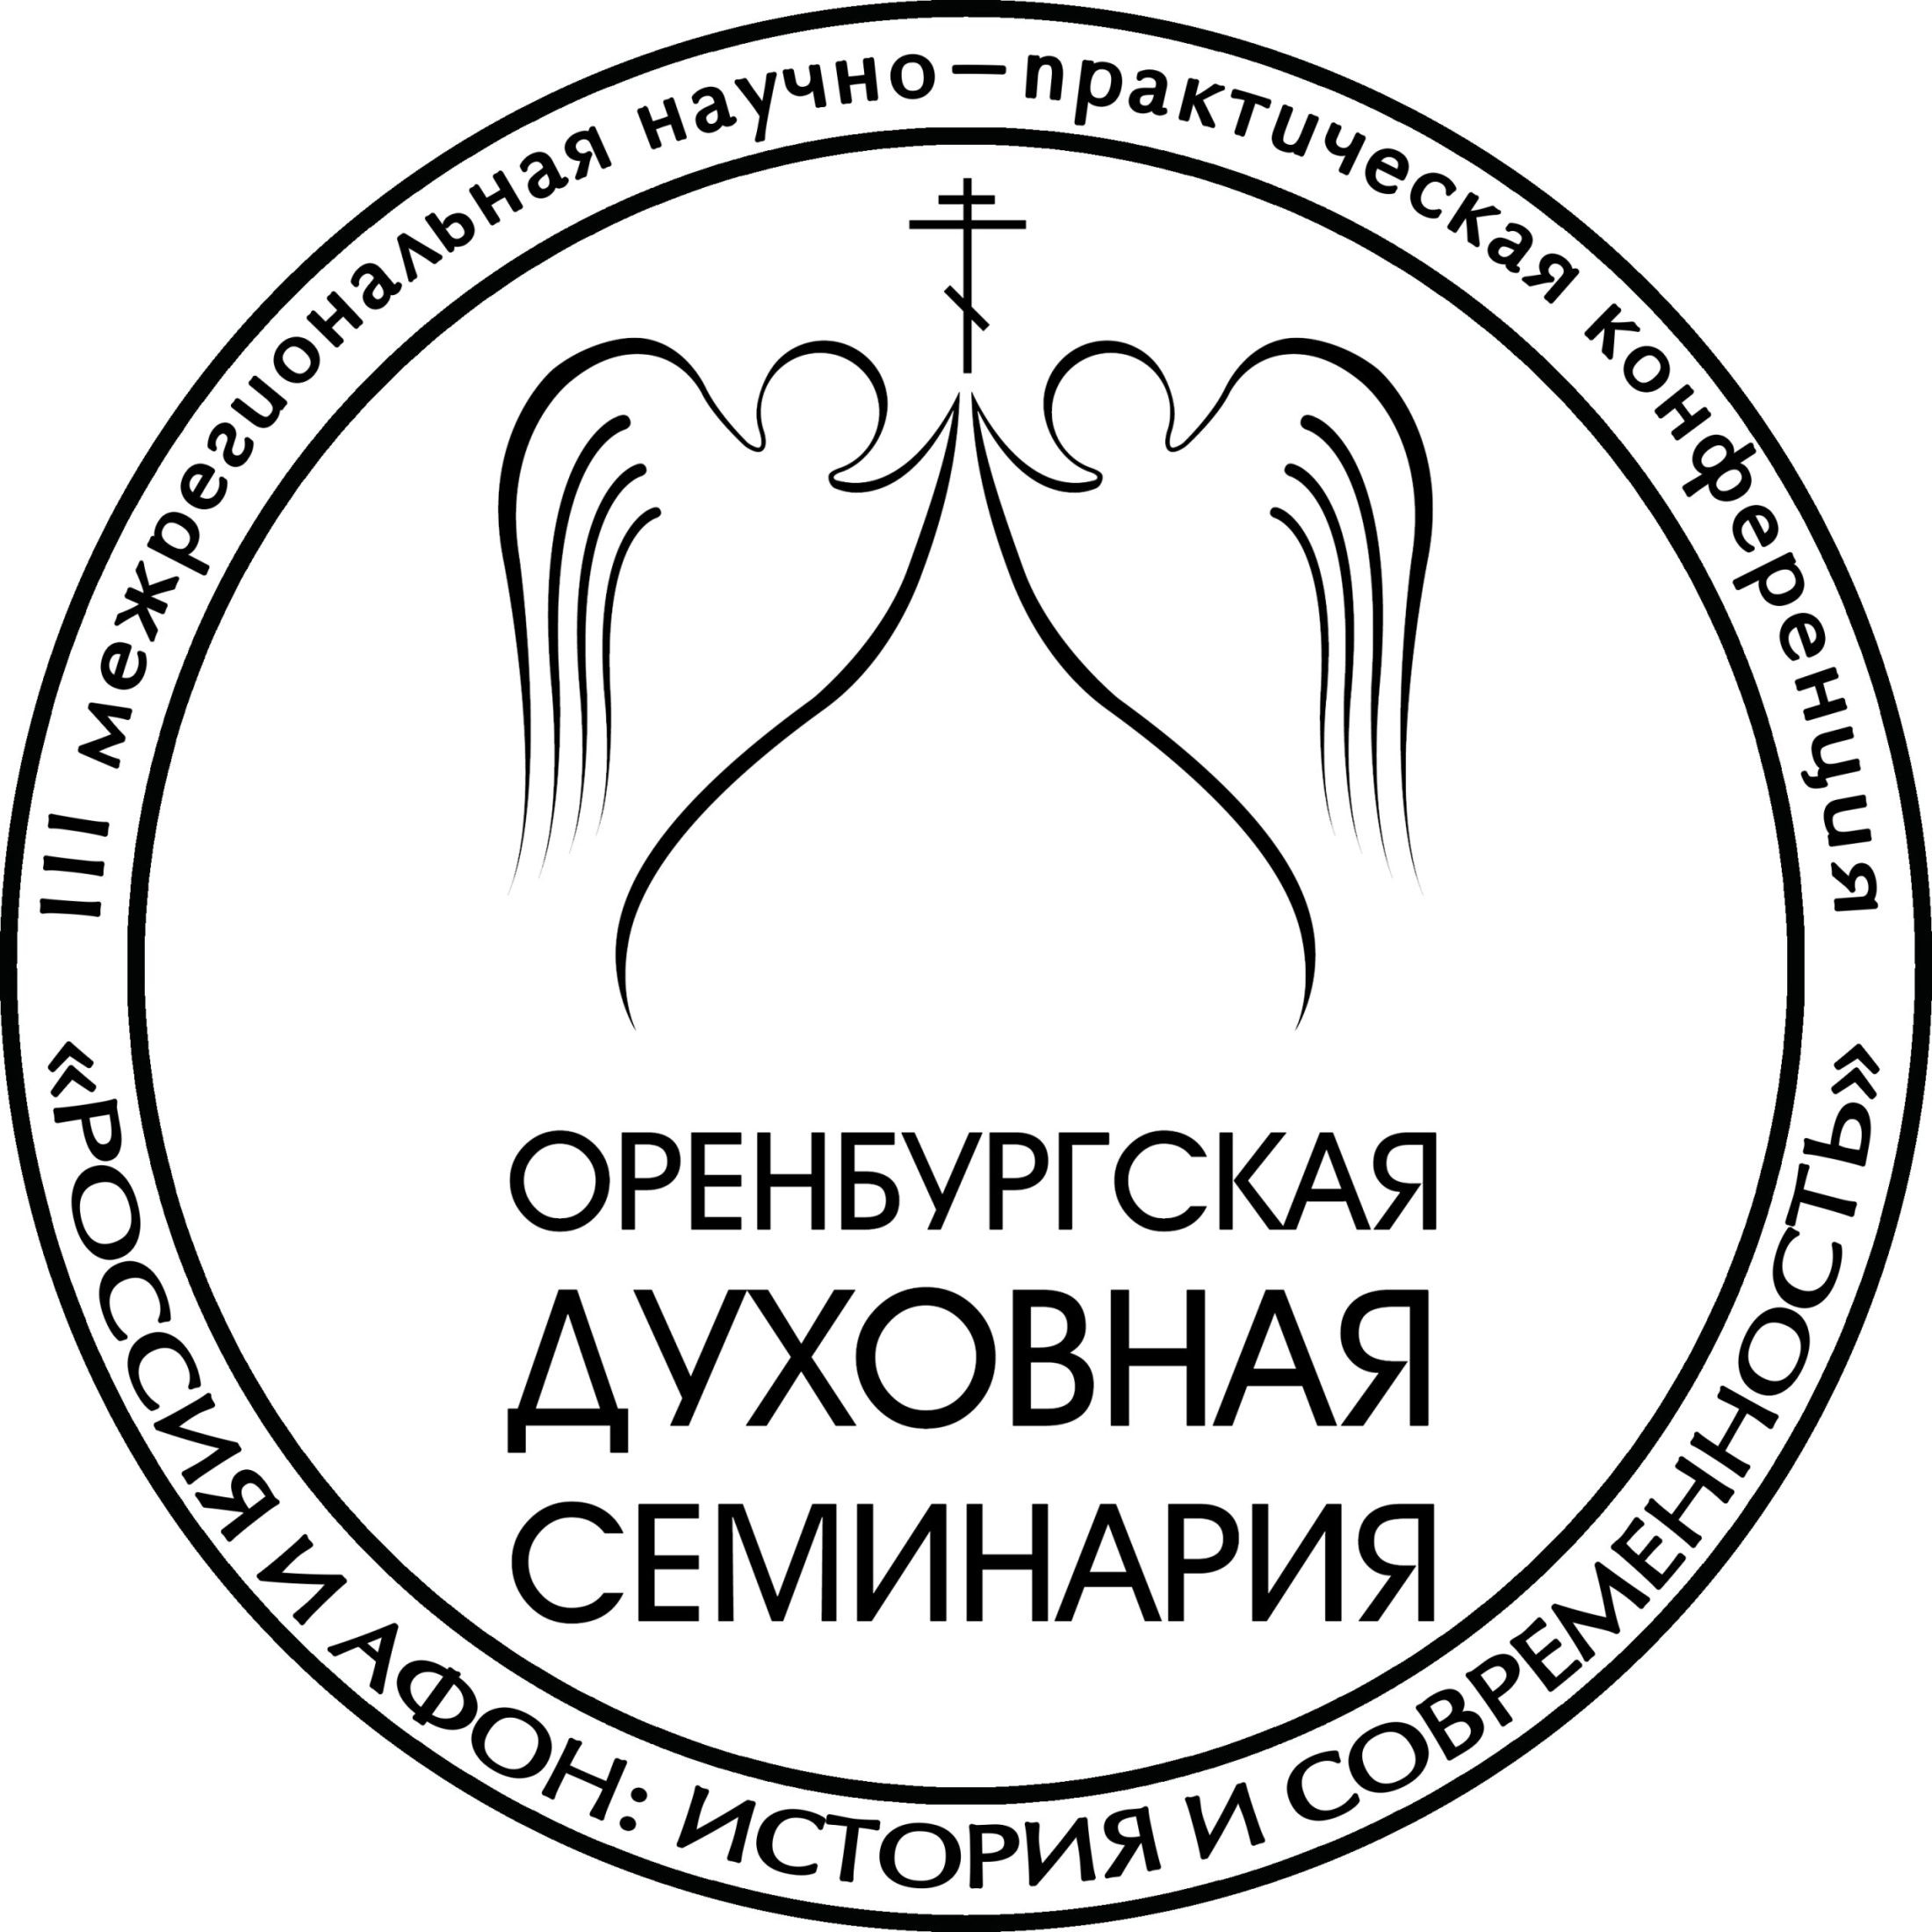 Оренбургская духовная семинария объявляет конкурс на замещение вакантных должностей